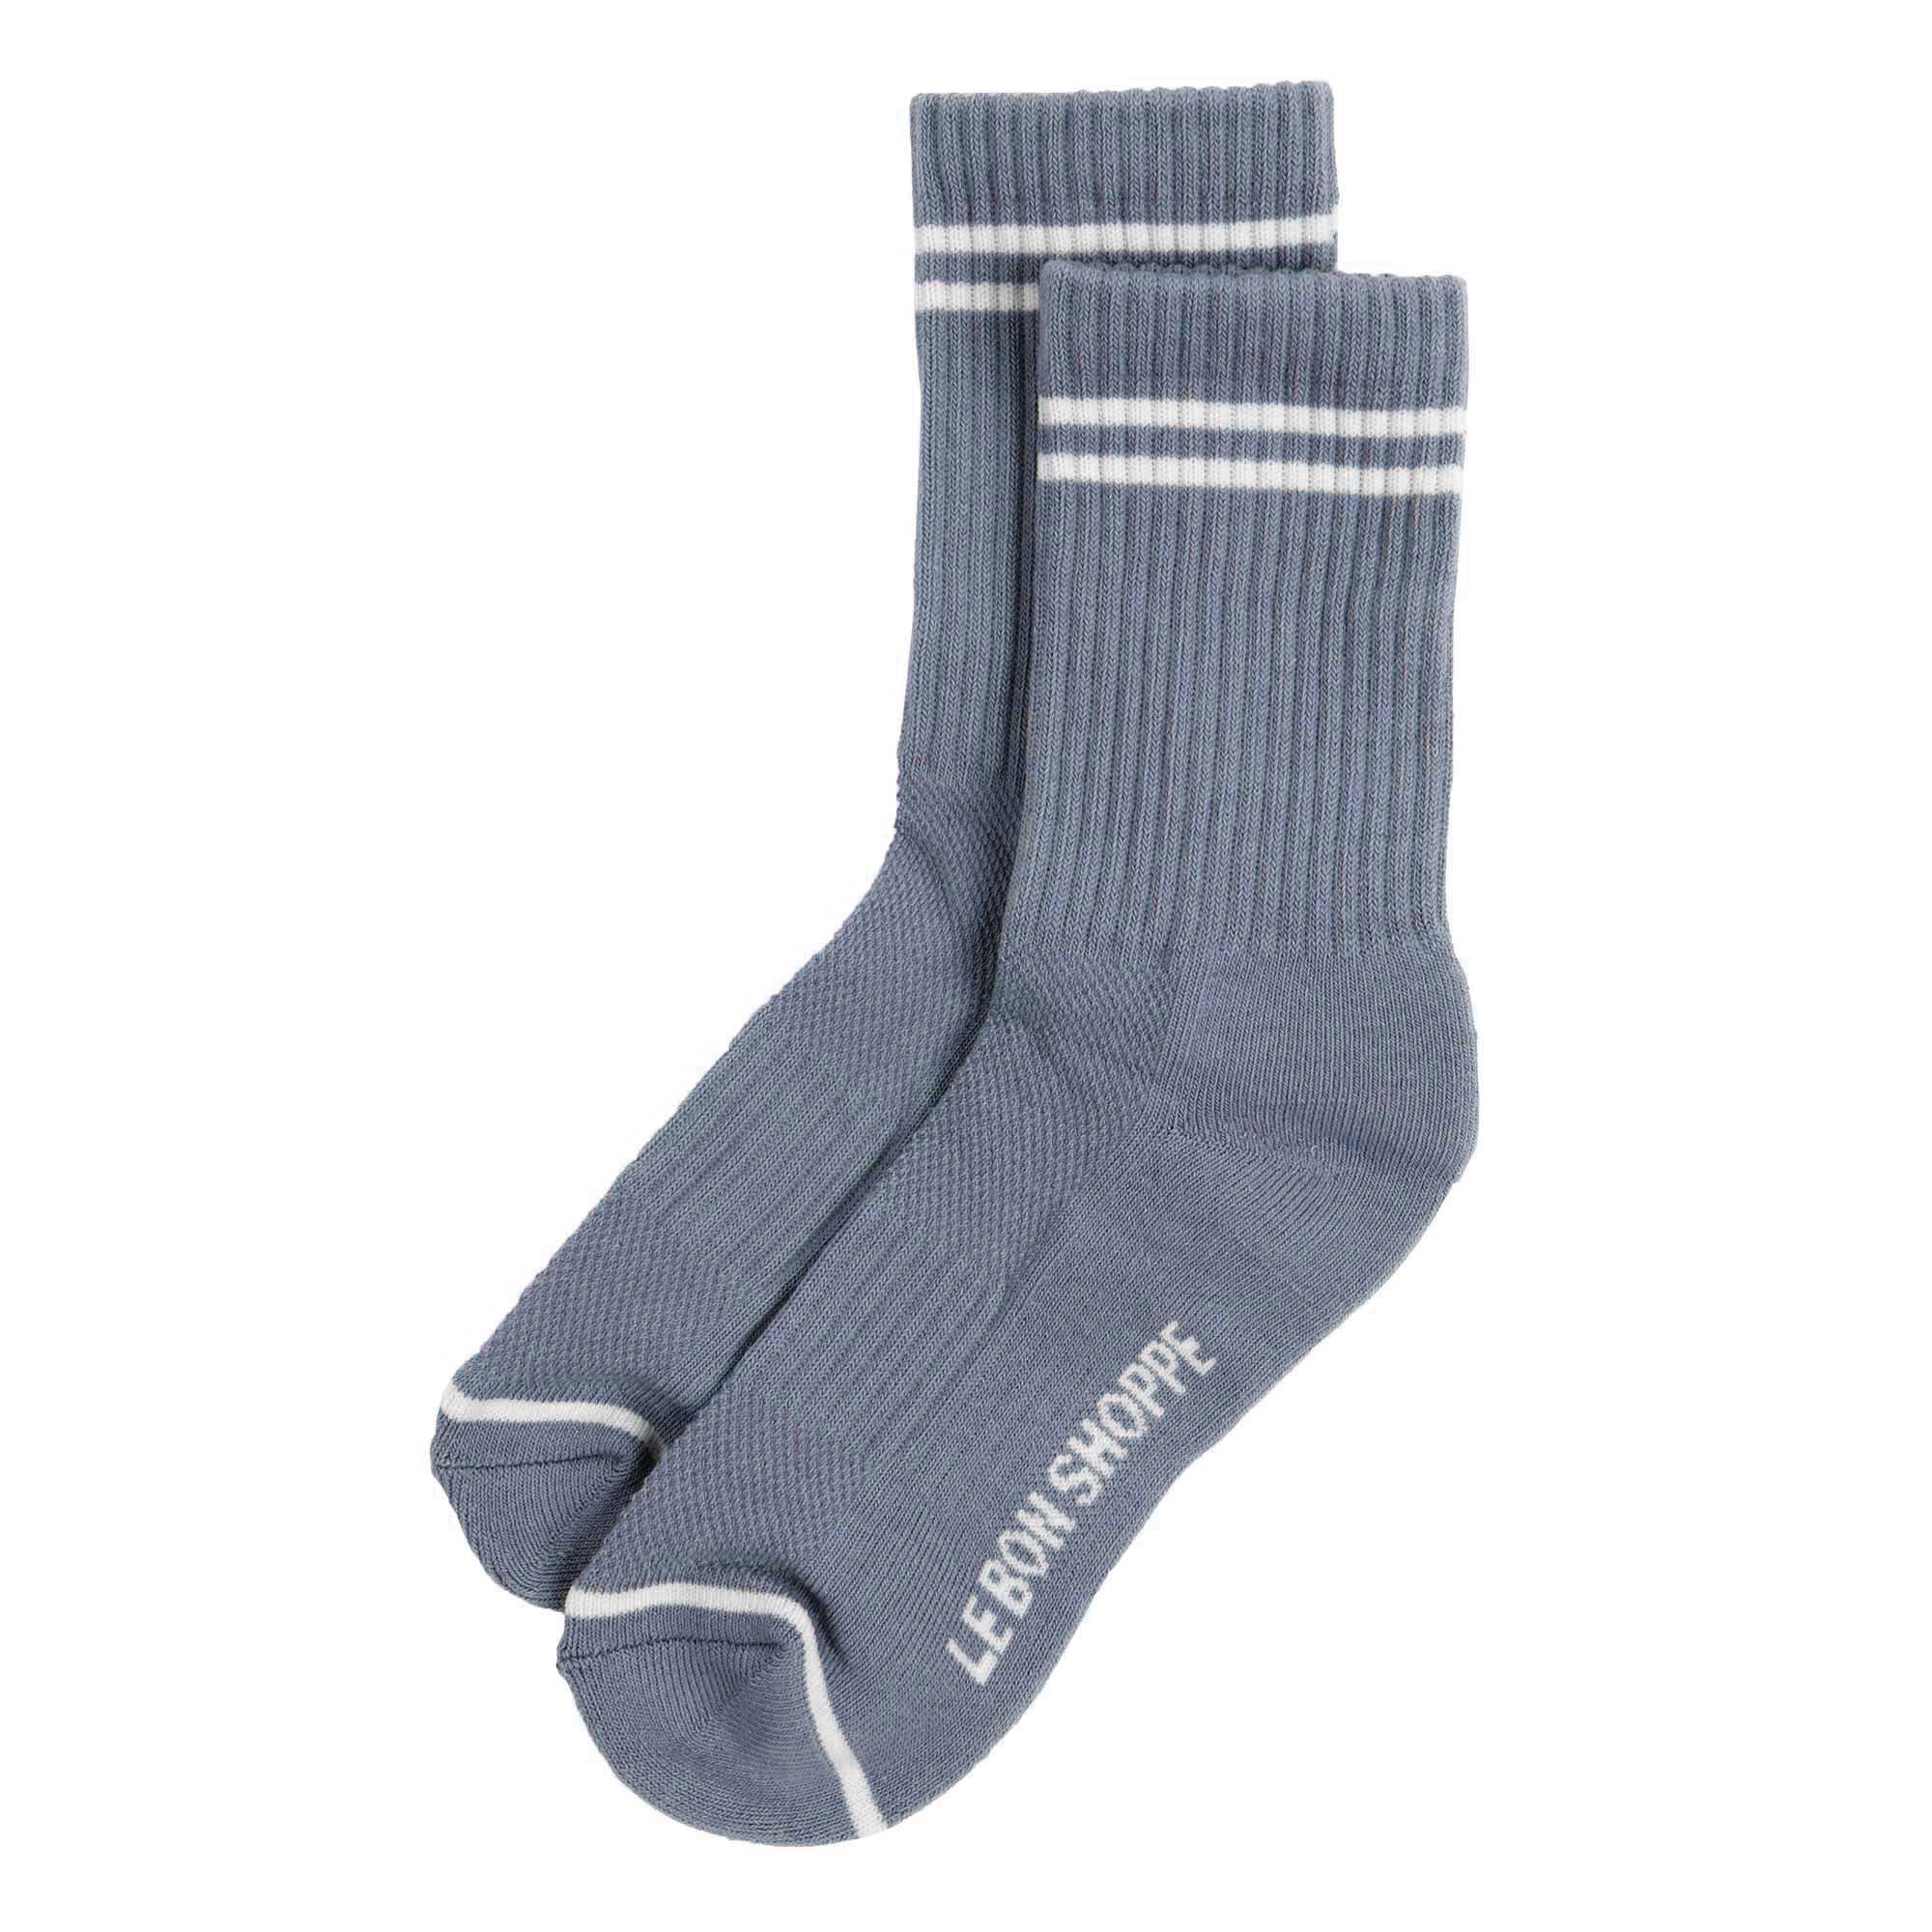 Le Bon Shoppe Boyfriend Socks, blue grey